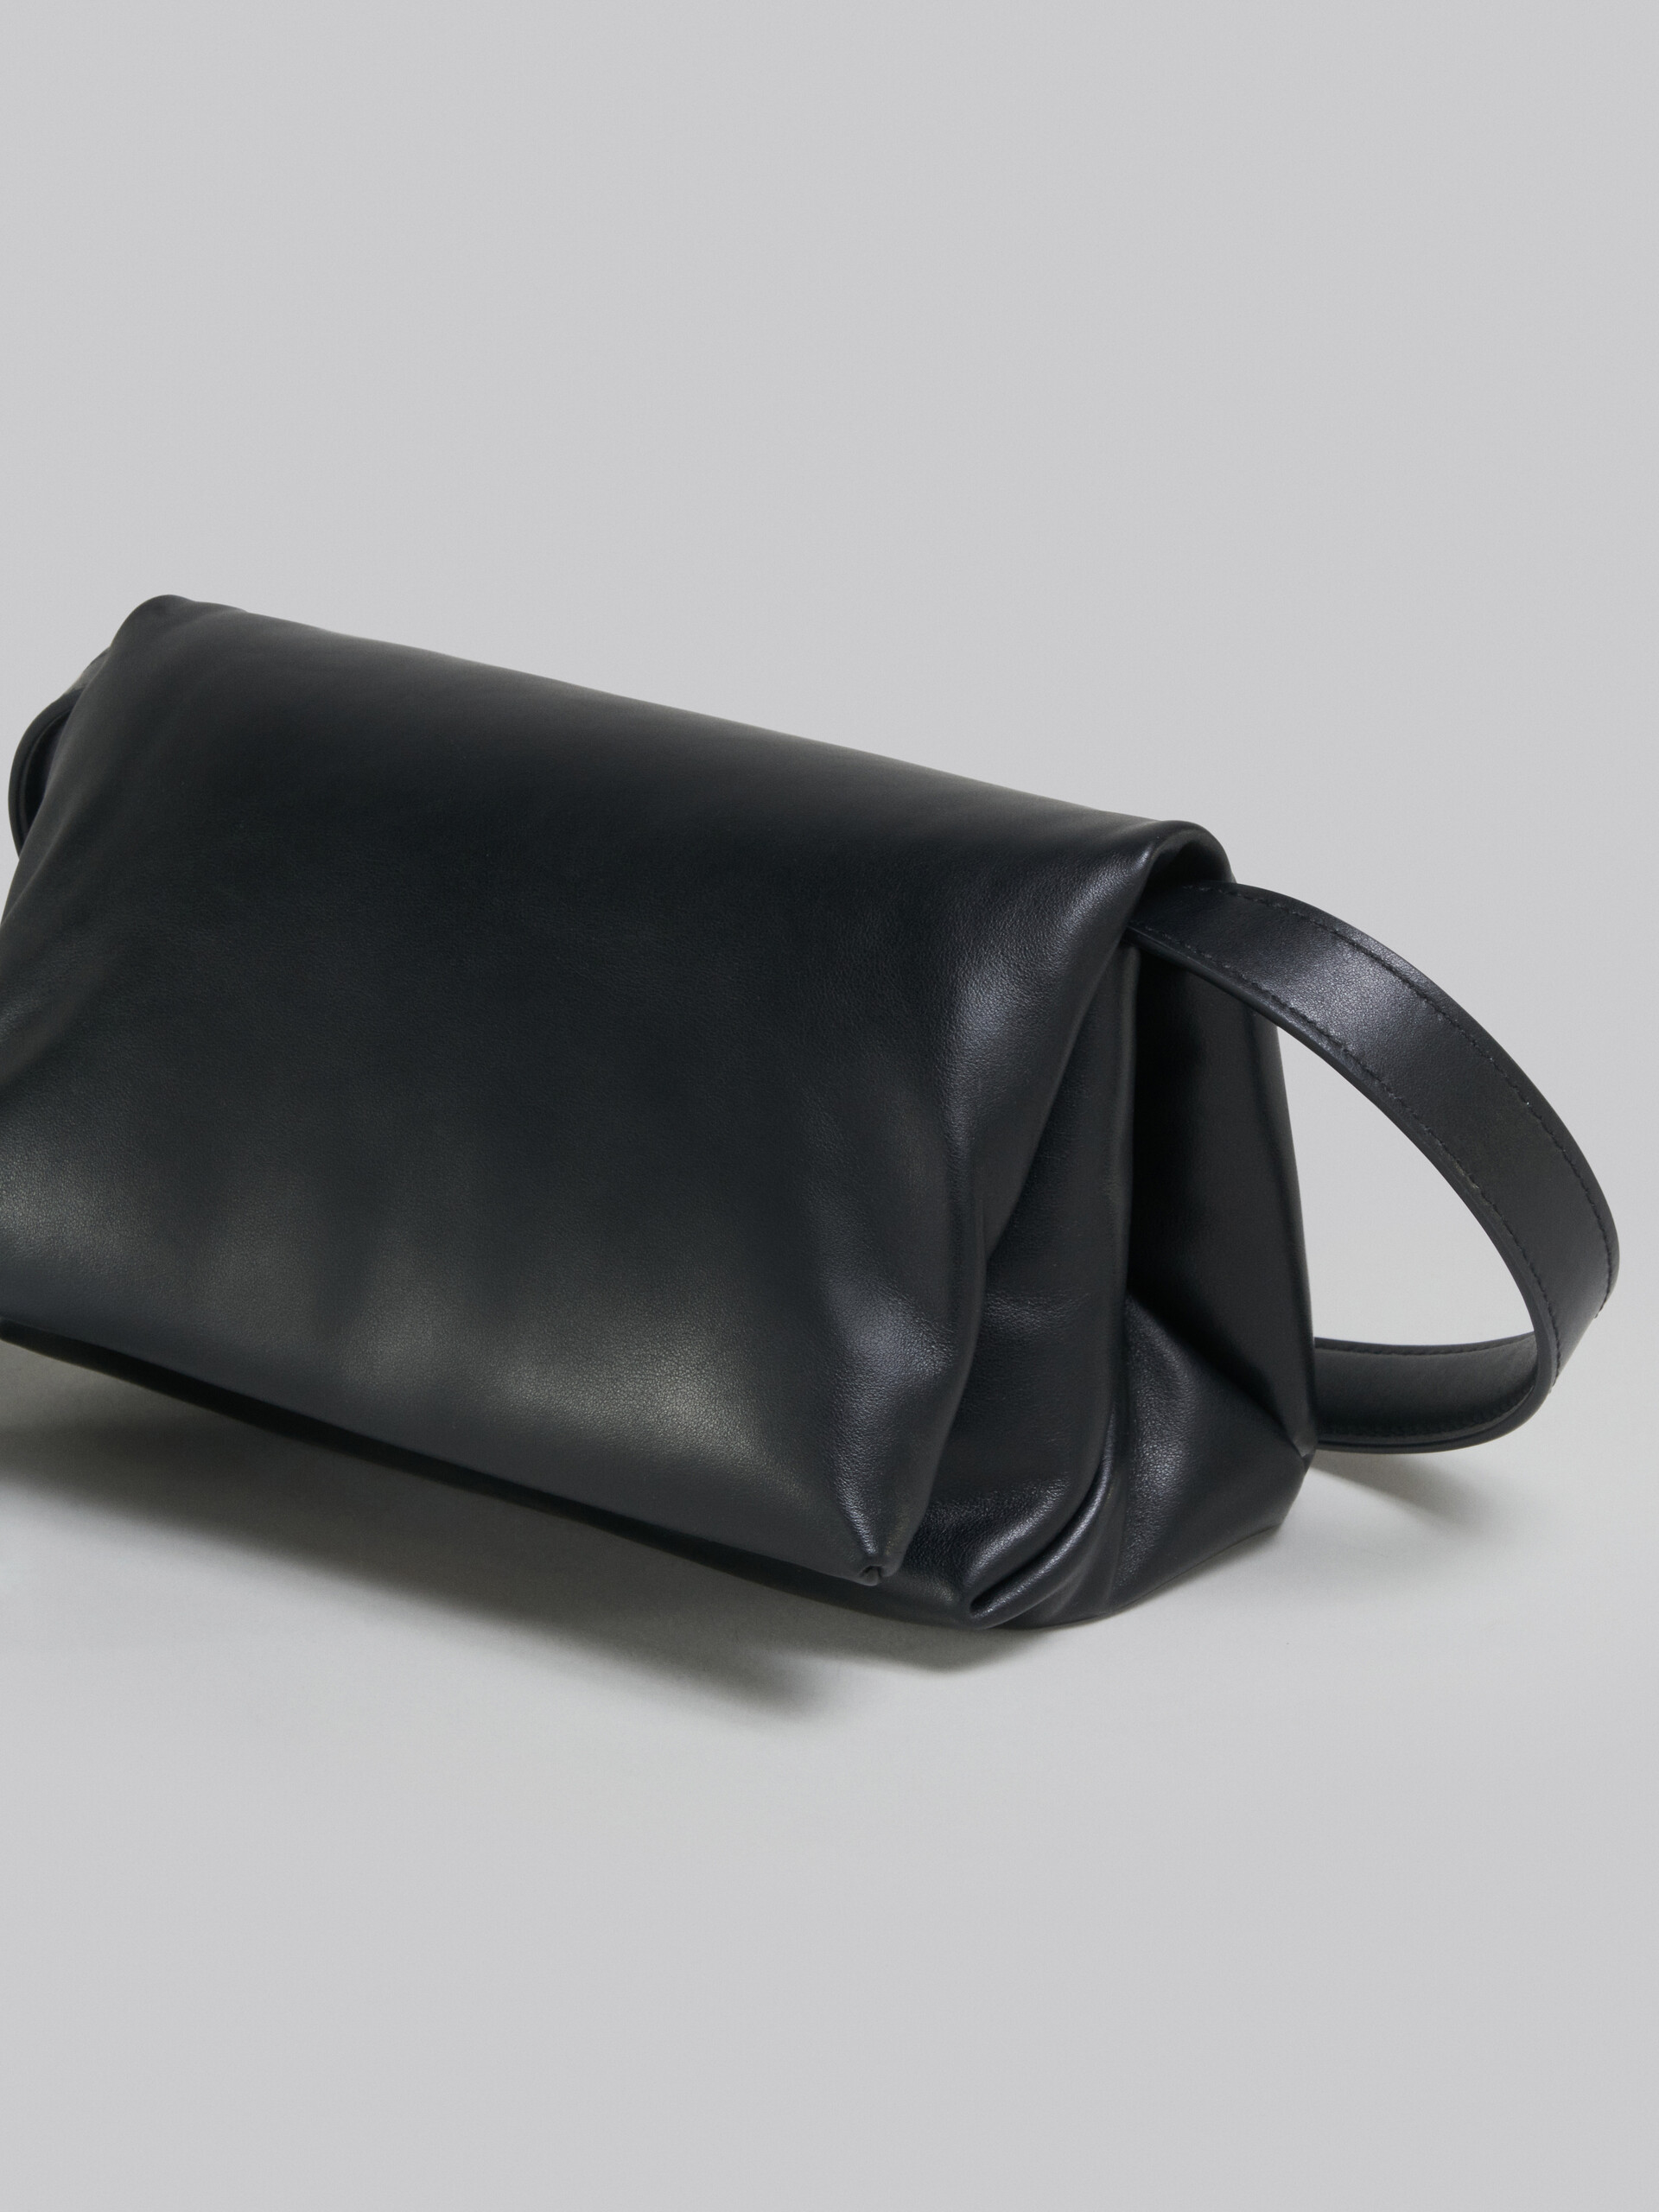 Small black calsfkin Prisma bag - Shoulder Bag - Image 5